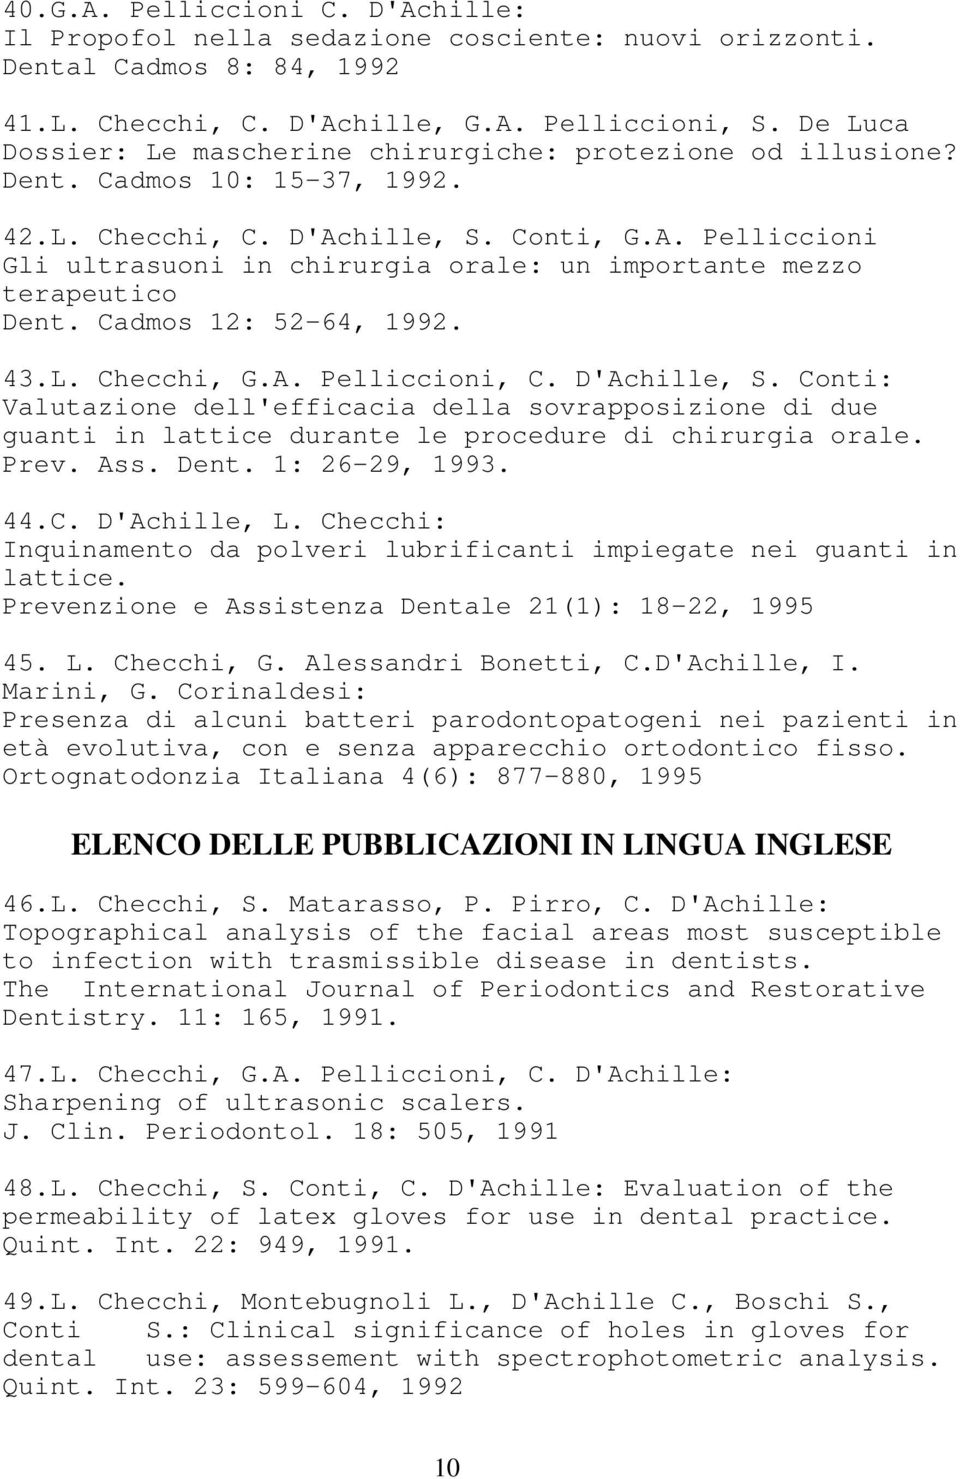 hille, S. Conti, G.A. Pelliccioni Gli ultrasuoni in chirurgia orale: un importante mezzo terapeutico Dent. Cadmos 12: 52-64, 1992. 43.L. Checchi, G.A. Pelliccioni, C. D'Achille, S.